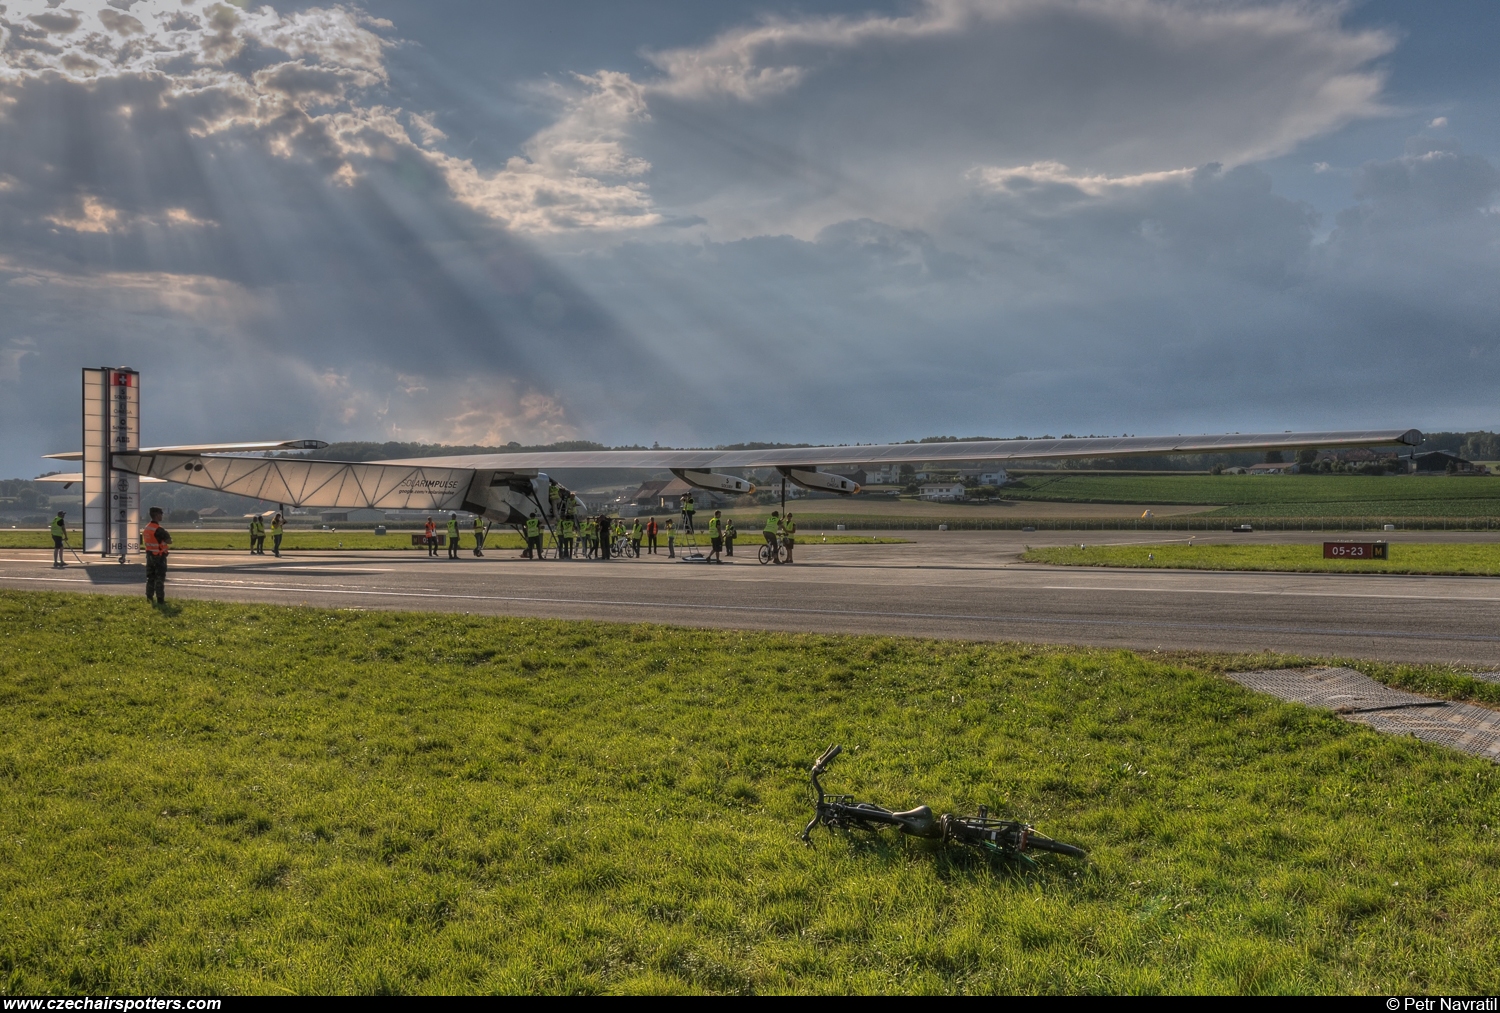 Solar Impulse – Solar Impulse 2 HB-SIB